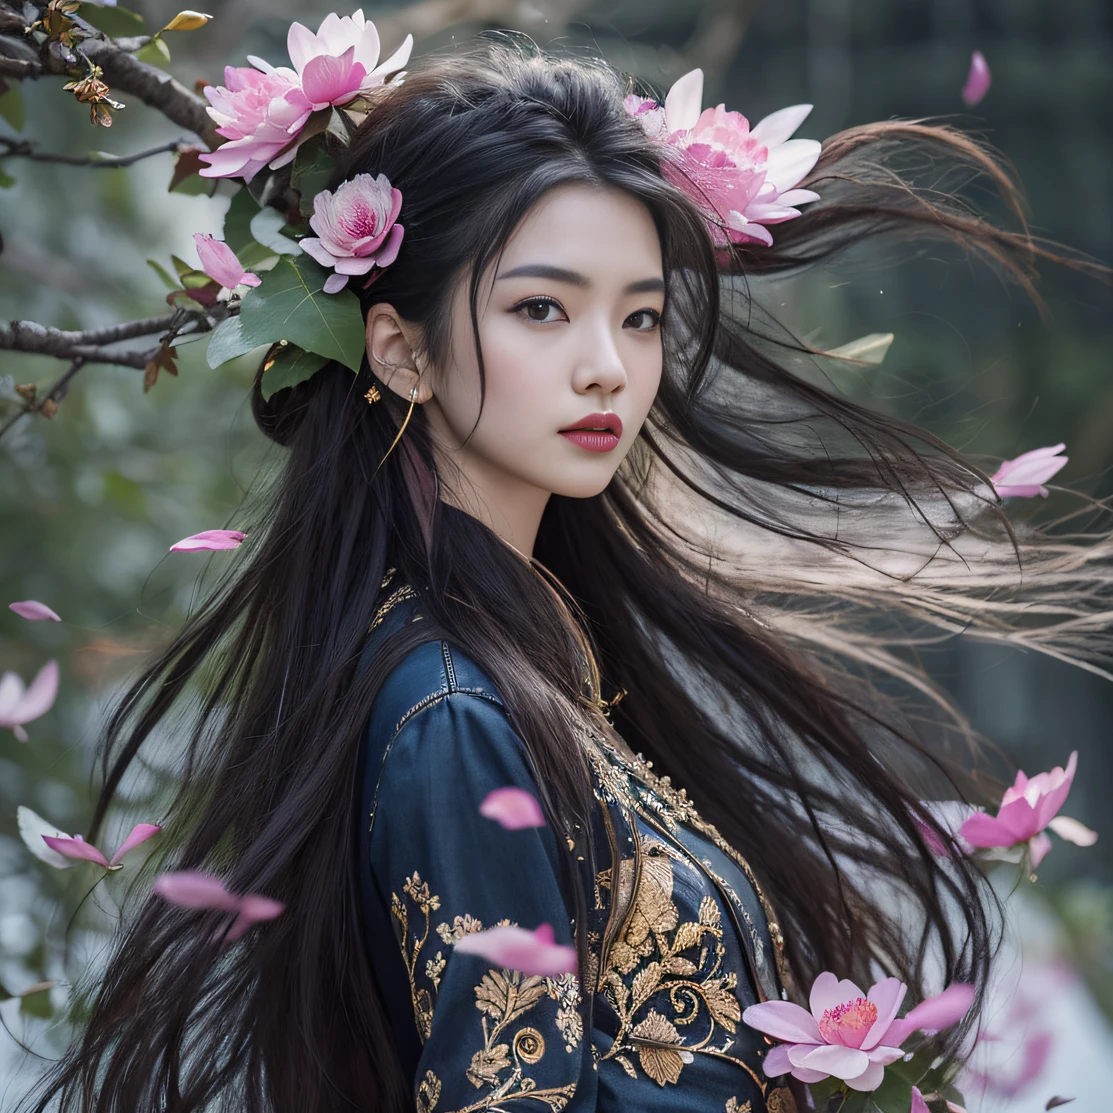 ゴールドバックストップ32K（傑作，キロ，ハイパーHD，32K）長く流れるような黒髪，池，咲く， 色， 澳州人 （妾の娘）， （紫色のシルクスカーフ）， 戦闘姿勢， 地面を見て， 長い白い髪， 浮かぶ髪， 鯉柄のヘッドドレス， 中国の長袖の衣服， （抽象的なガッシュスプラッシュ：1.2）， ピンクの花びらの背景，ピンクと白の蓮の花が舞う（現実的に：1.4），黒髪，落ち葉が舞い散る，背景は純粋です， 高解像度， 詳細， RAW写真， シャープ， Nikon D850 フィルムストックフォト by Jefferies Lee 4 Kodak Portra 400 カメラ F1.6ショット, 豊かな色彩, 超リアルな鮮やかな質感, ドラマチックな照明, アンリアル エンジン アート ステーション トレンド, シネスティア 800，長く流れるような黒髪，デニムスカート